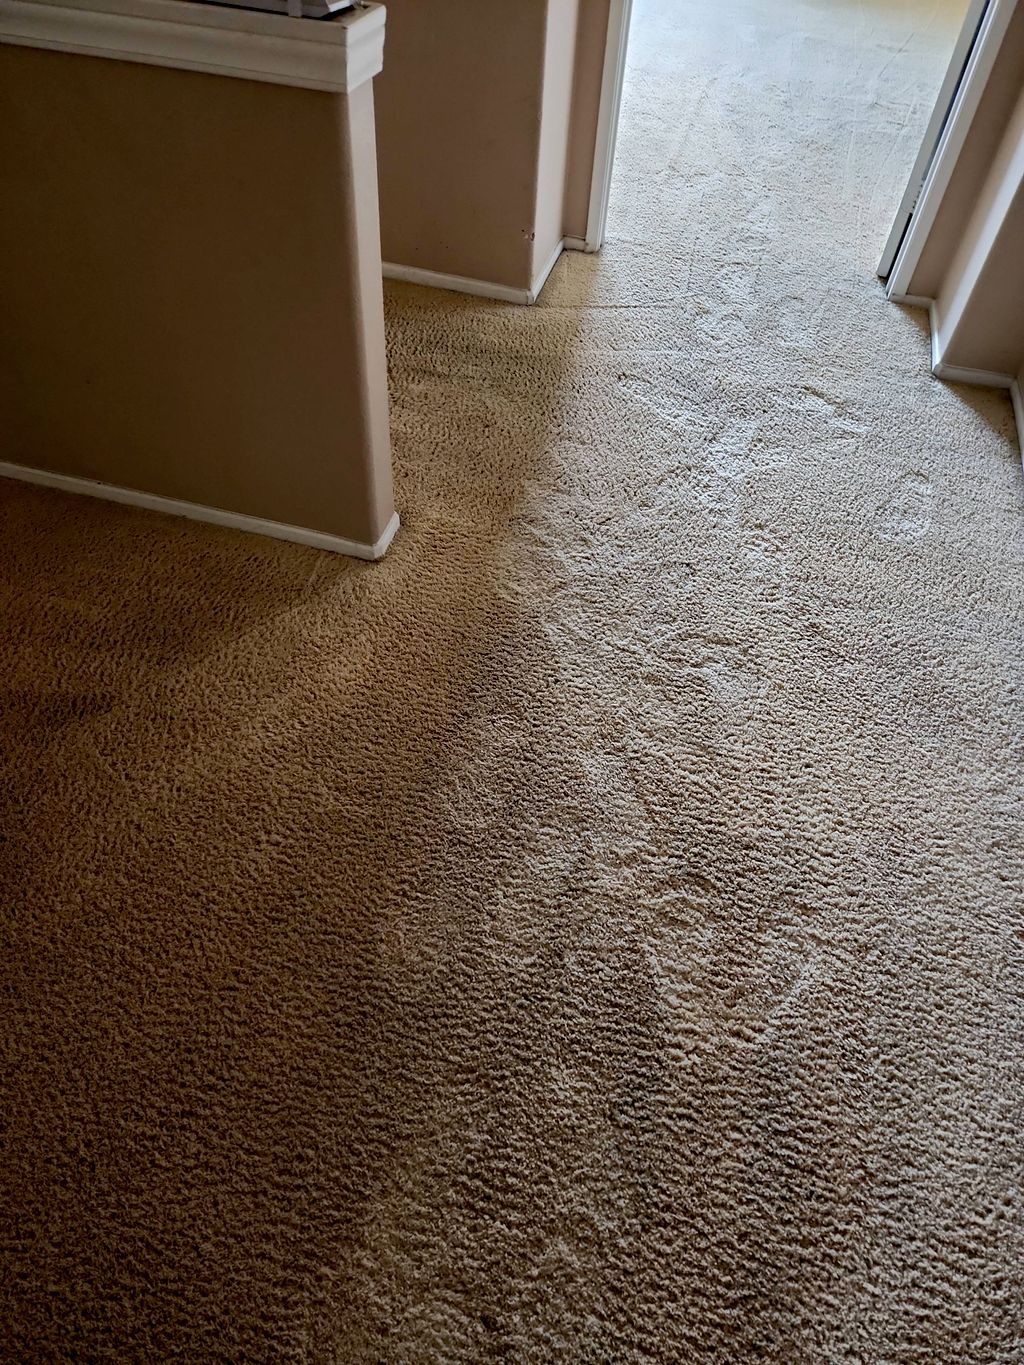 Carpet Repair in Menifee, CA - Taylor's Impressive Carpet Care